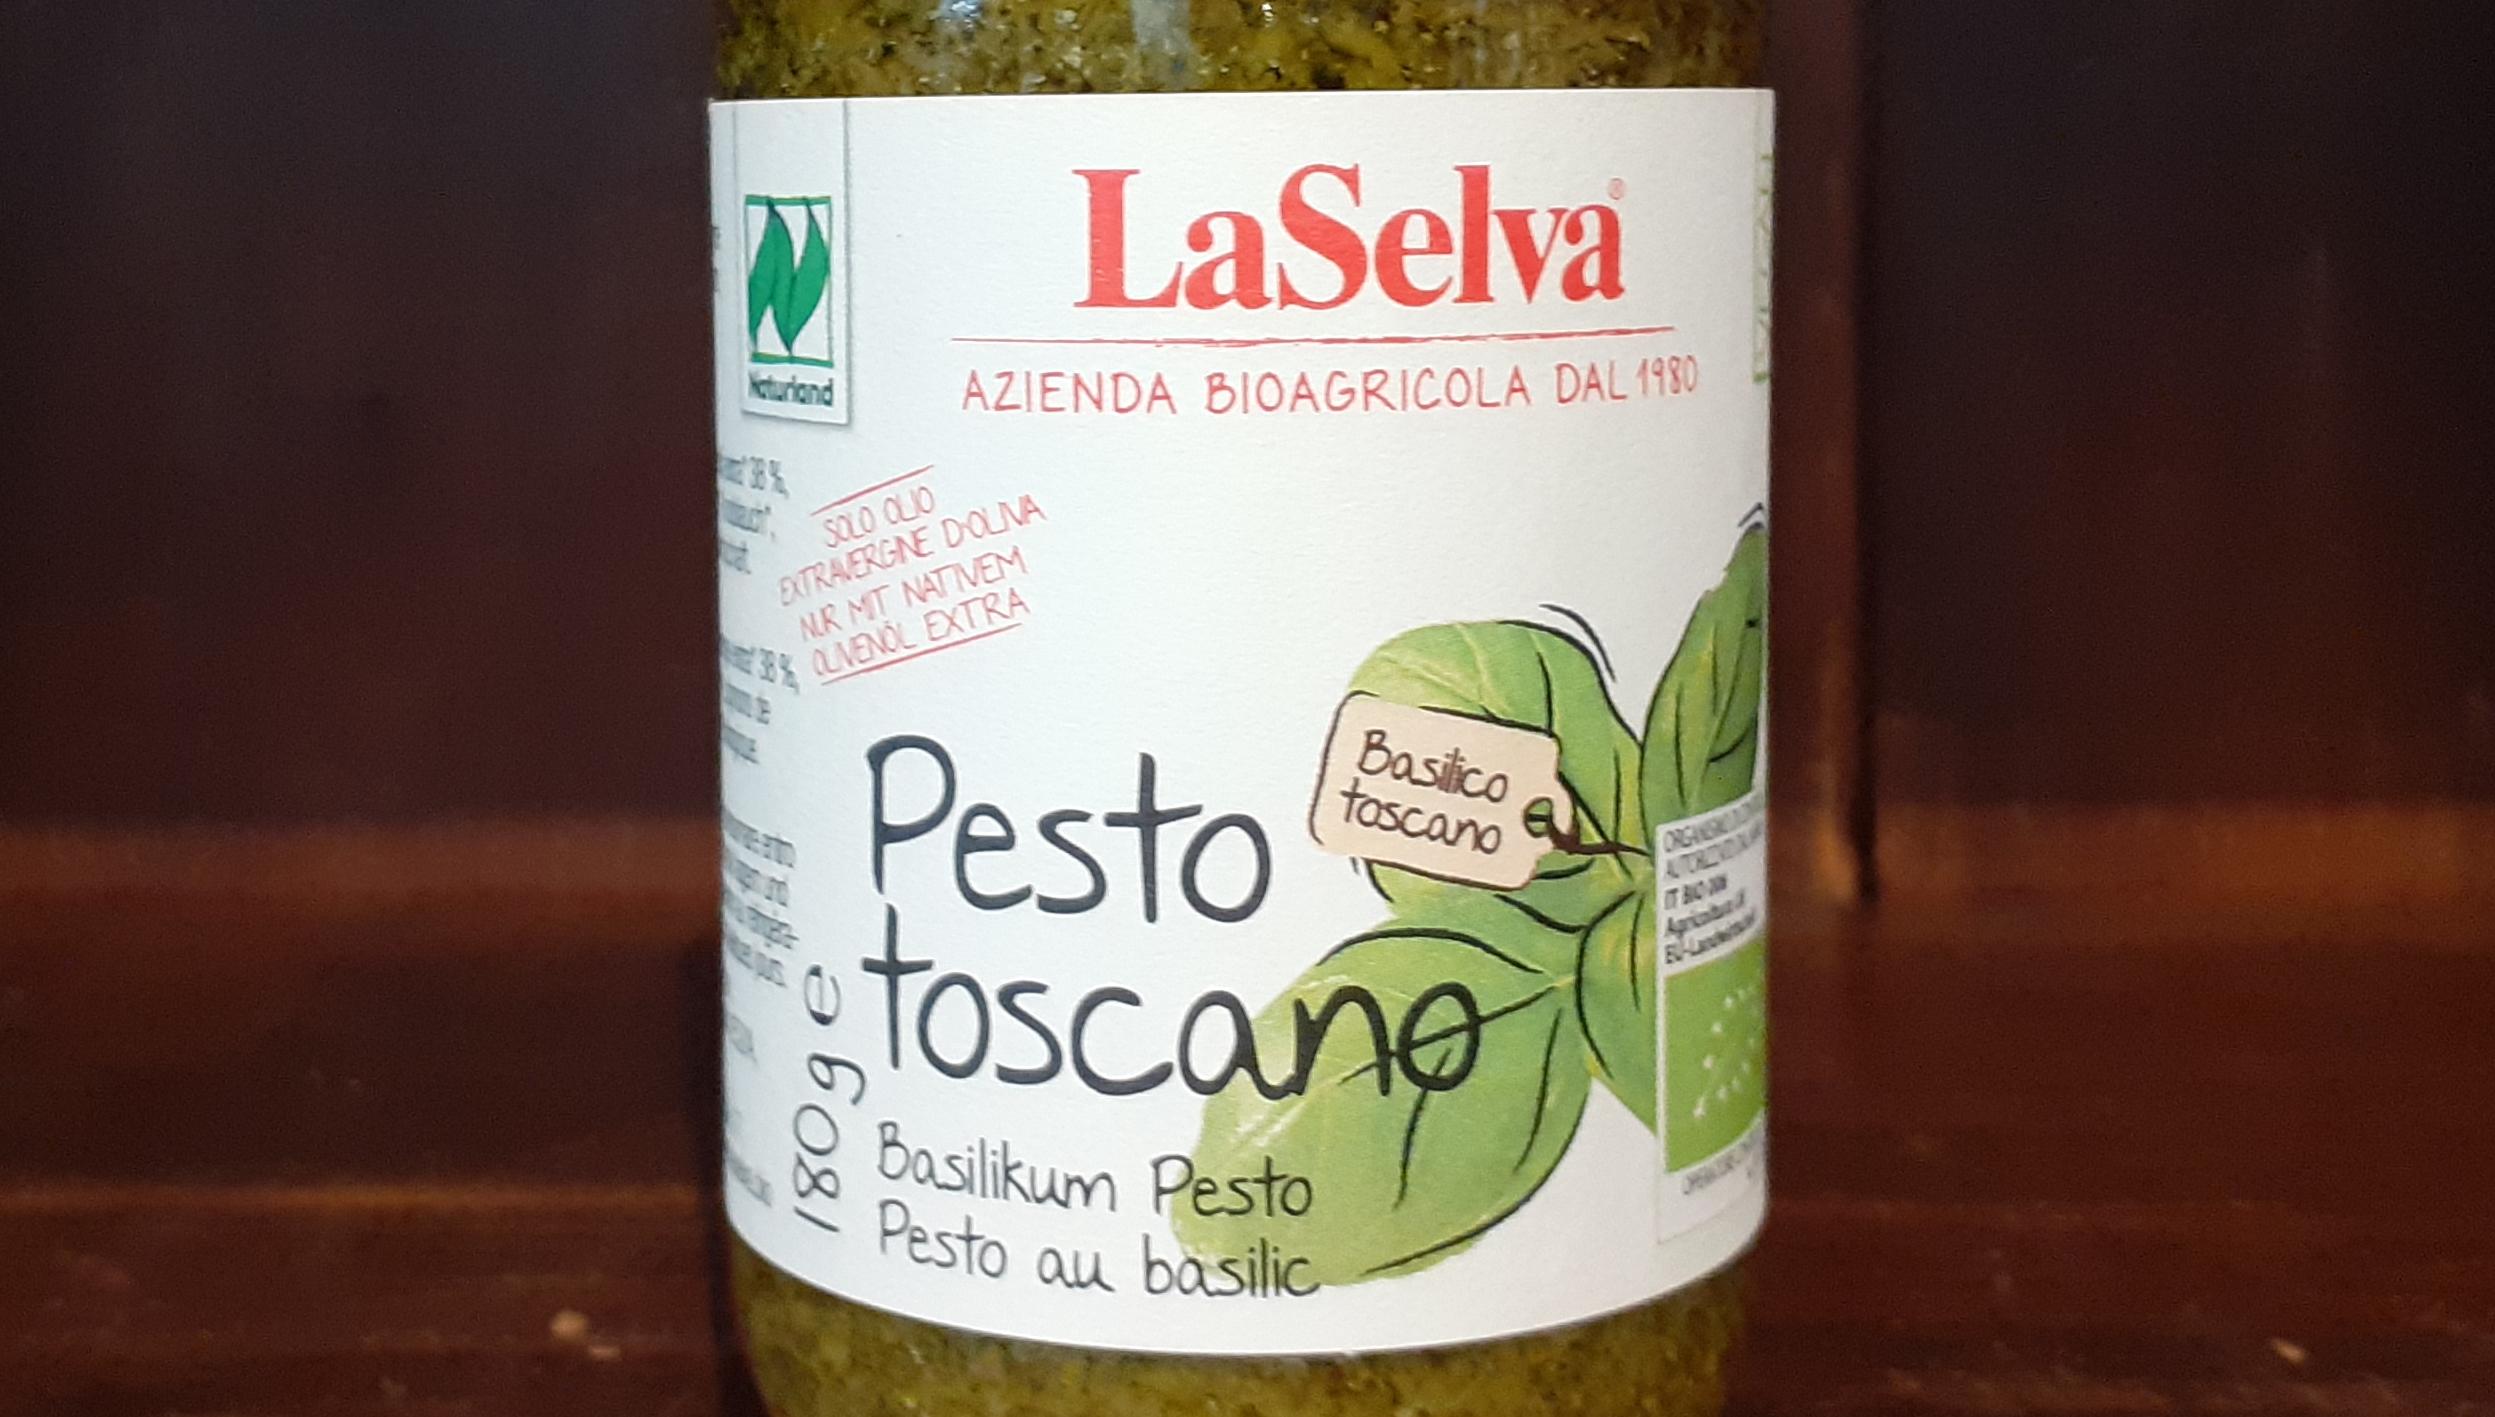 Pest toscano, Basilikum Pesto